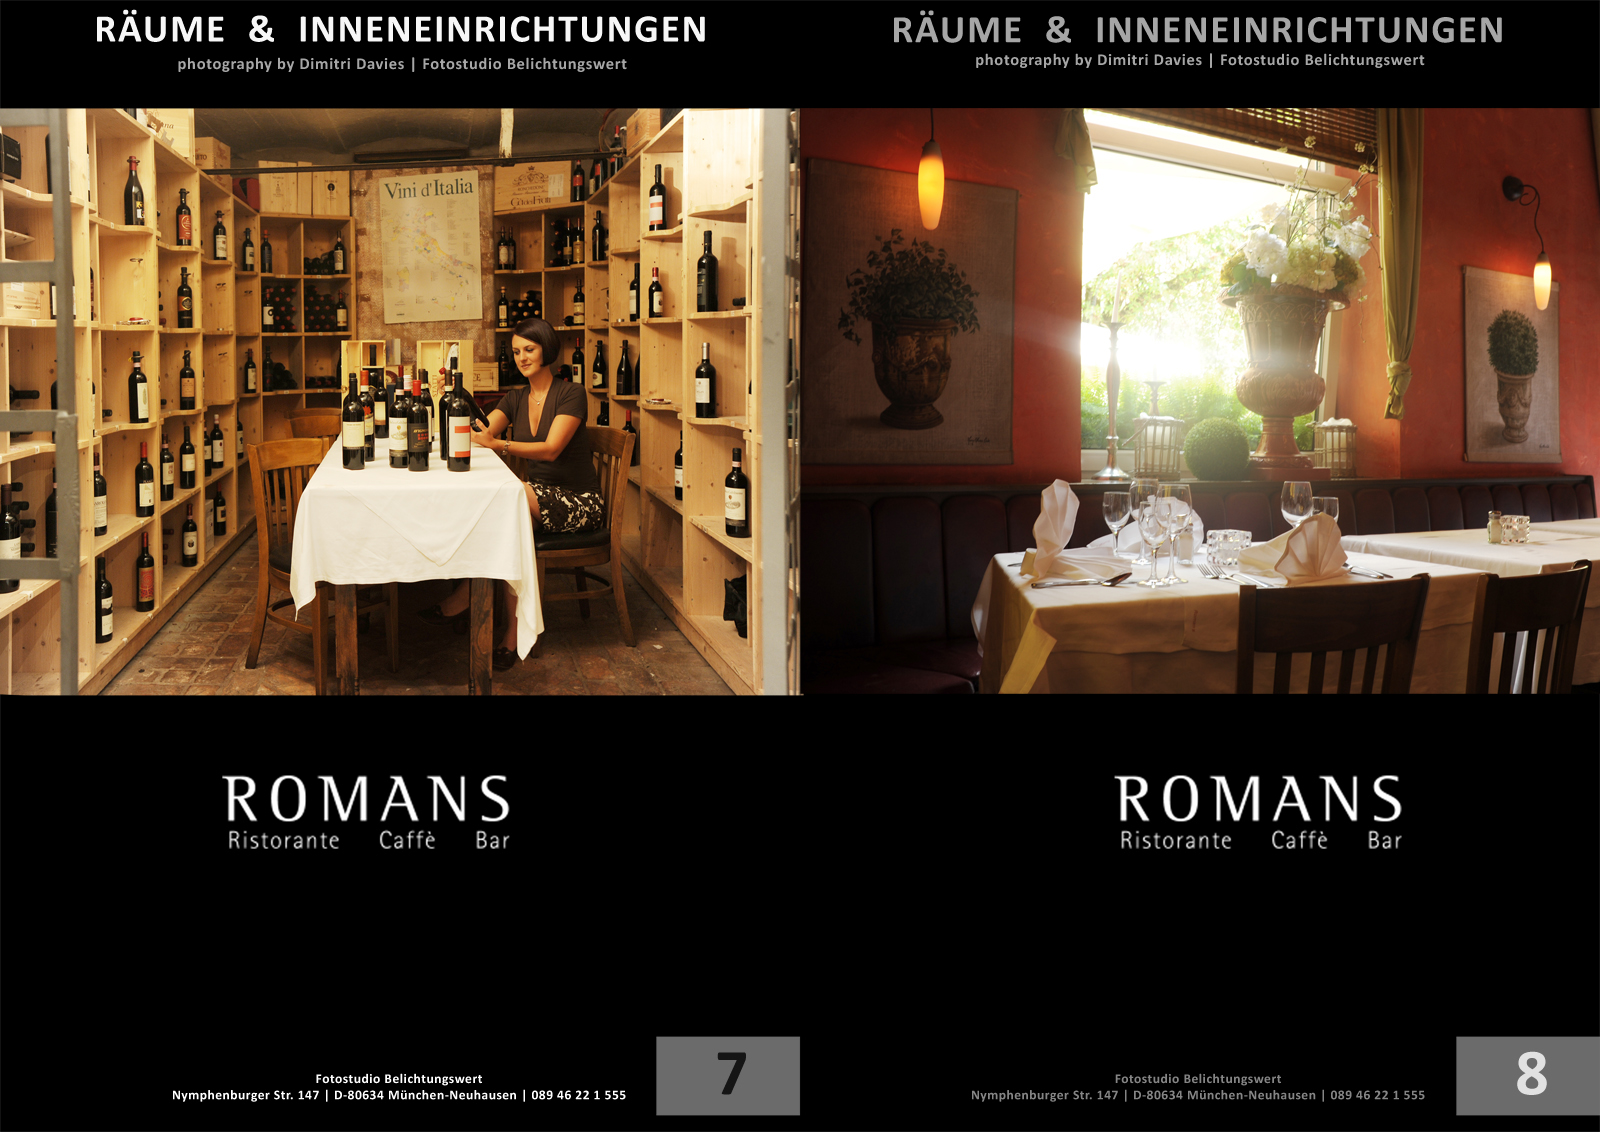 Inneneinrichtungen portfolio belichtungswert portfolio Romans restaurant innenräumlichkeiten